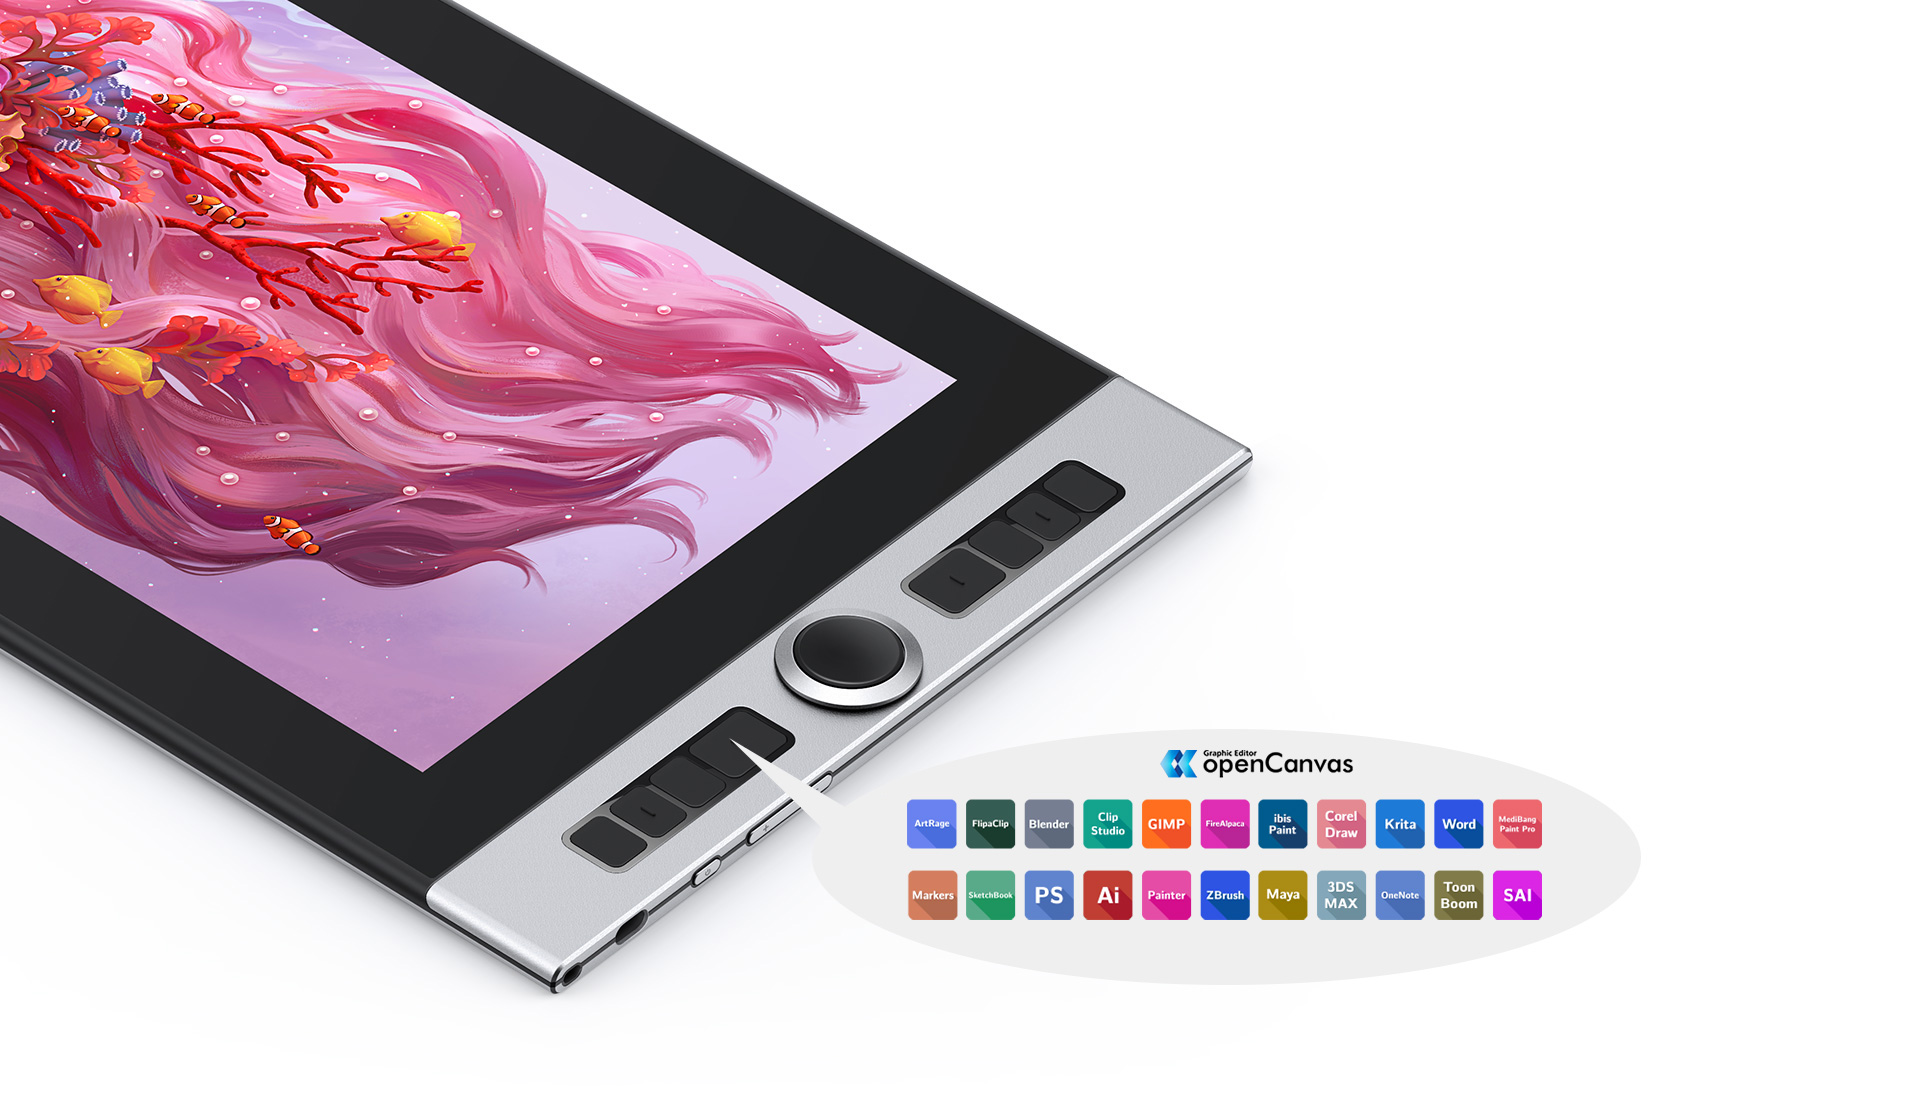 pantalla digitalizadora XP-Pen Innovator 16 presenta 8 teclas de acceso directo